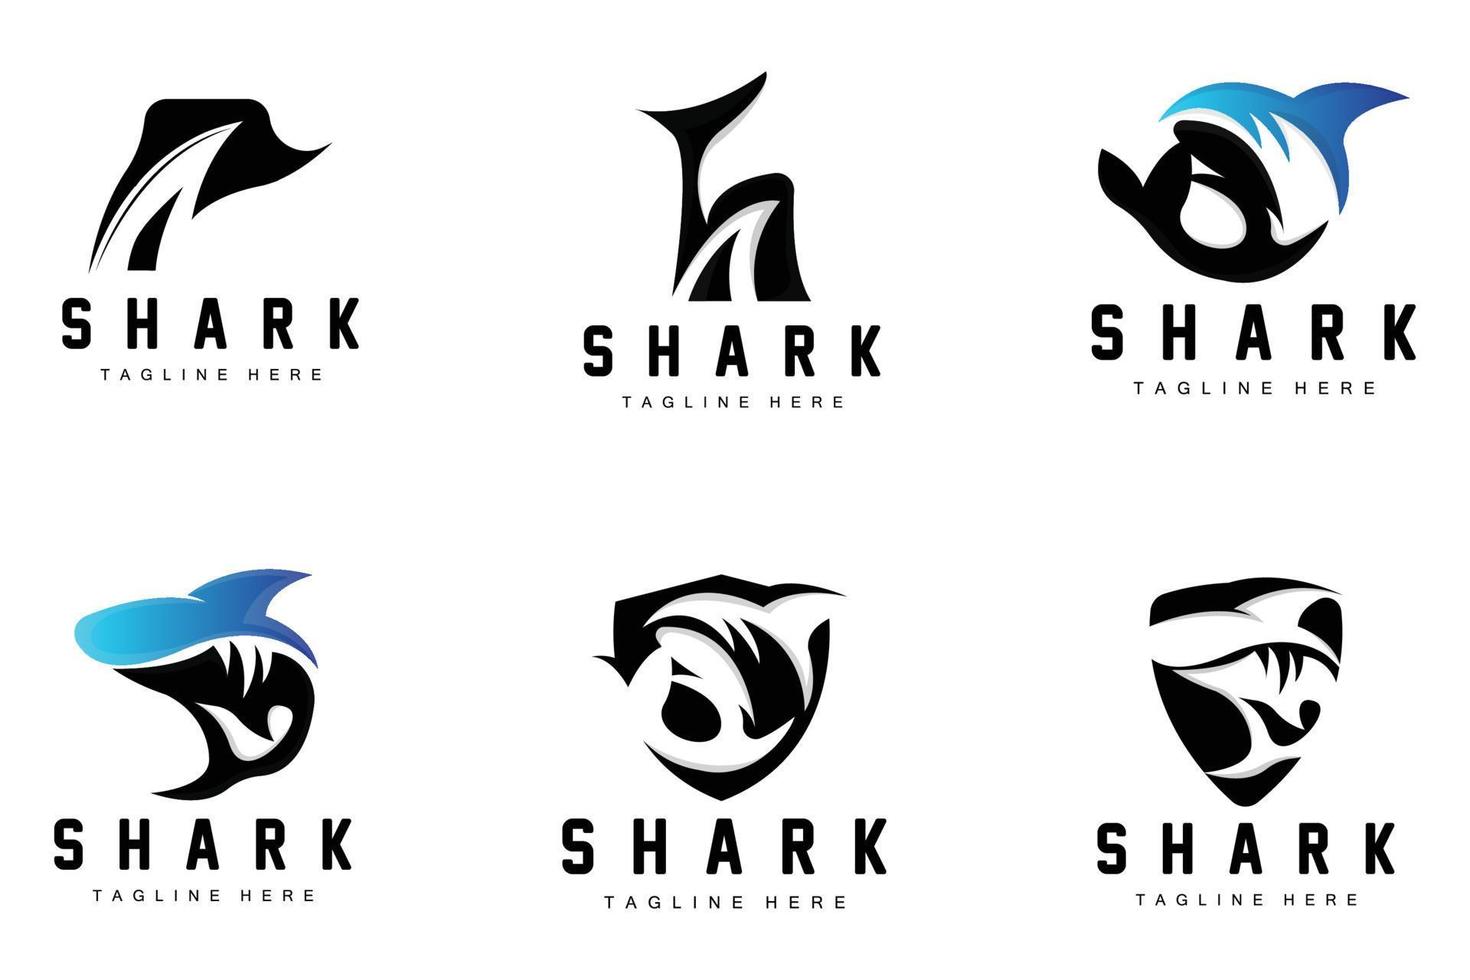 logotipo de tubarão, ilustração vetorial de peixe selvagem, predador do oceano, ícone de design de marca de produto vetor